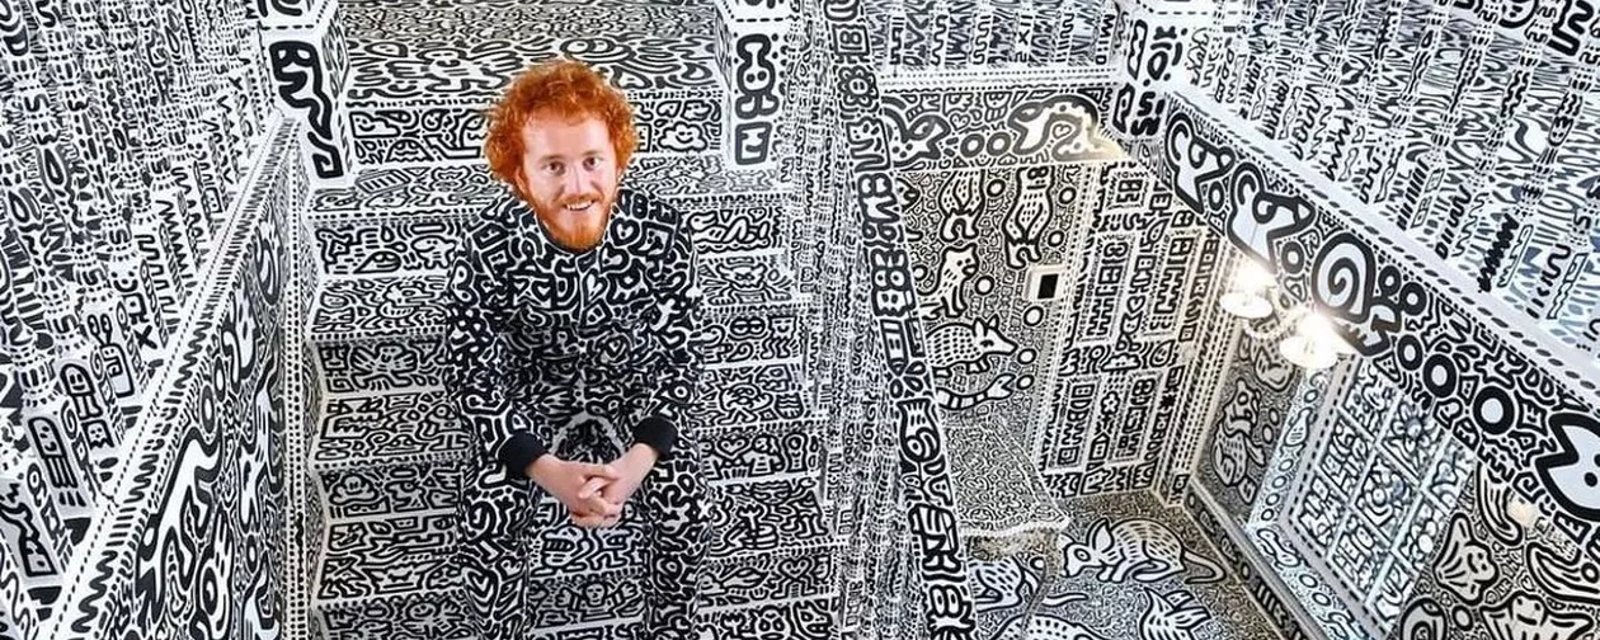 Cet artiste britannique a recouvert toute sa maison de gribouillages